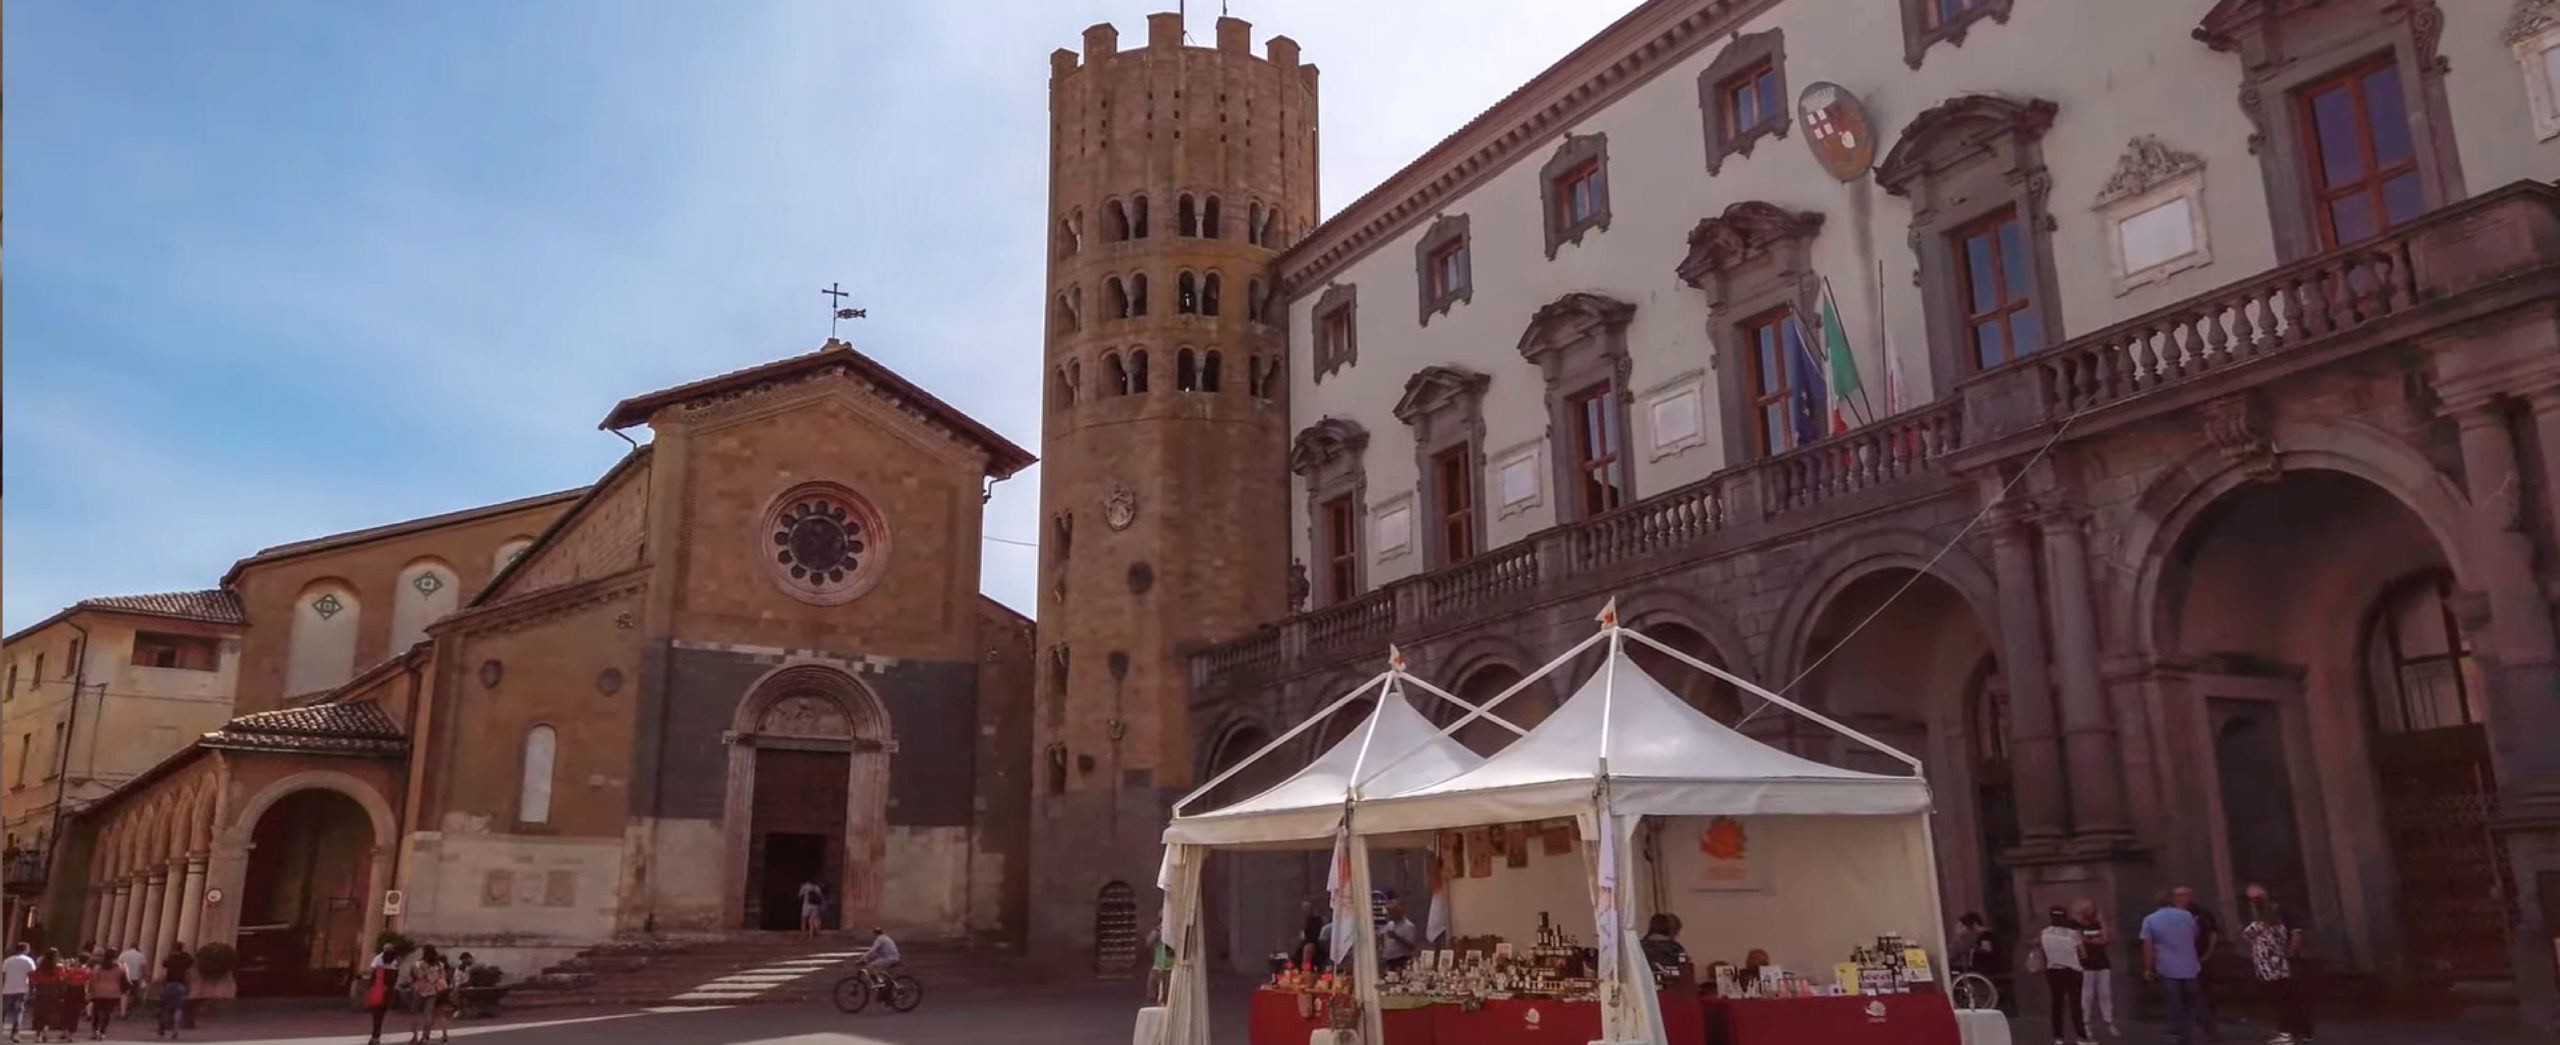 Orvieto - Piazza della Repubblica con la chiesa e il campanile di S. Andrea